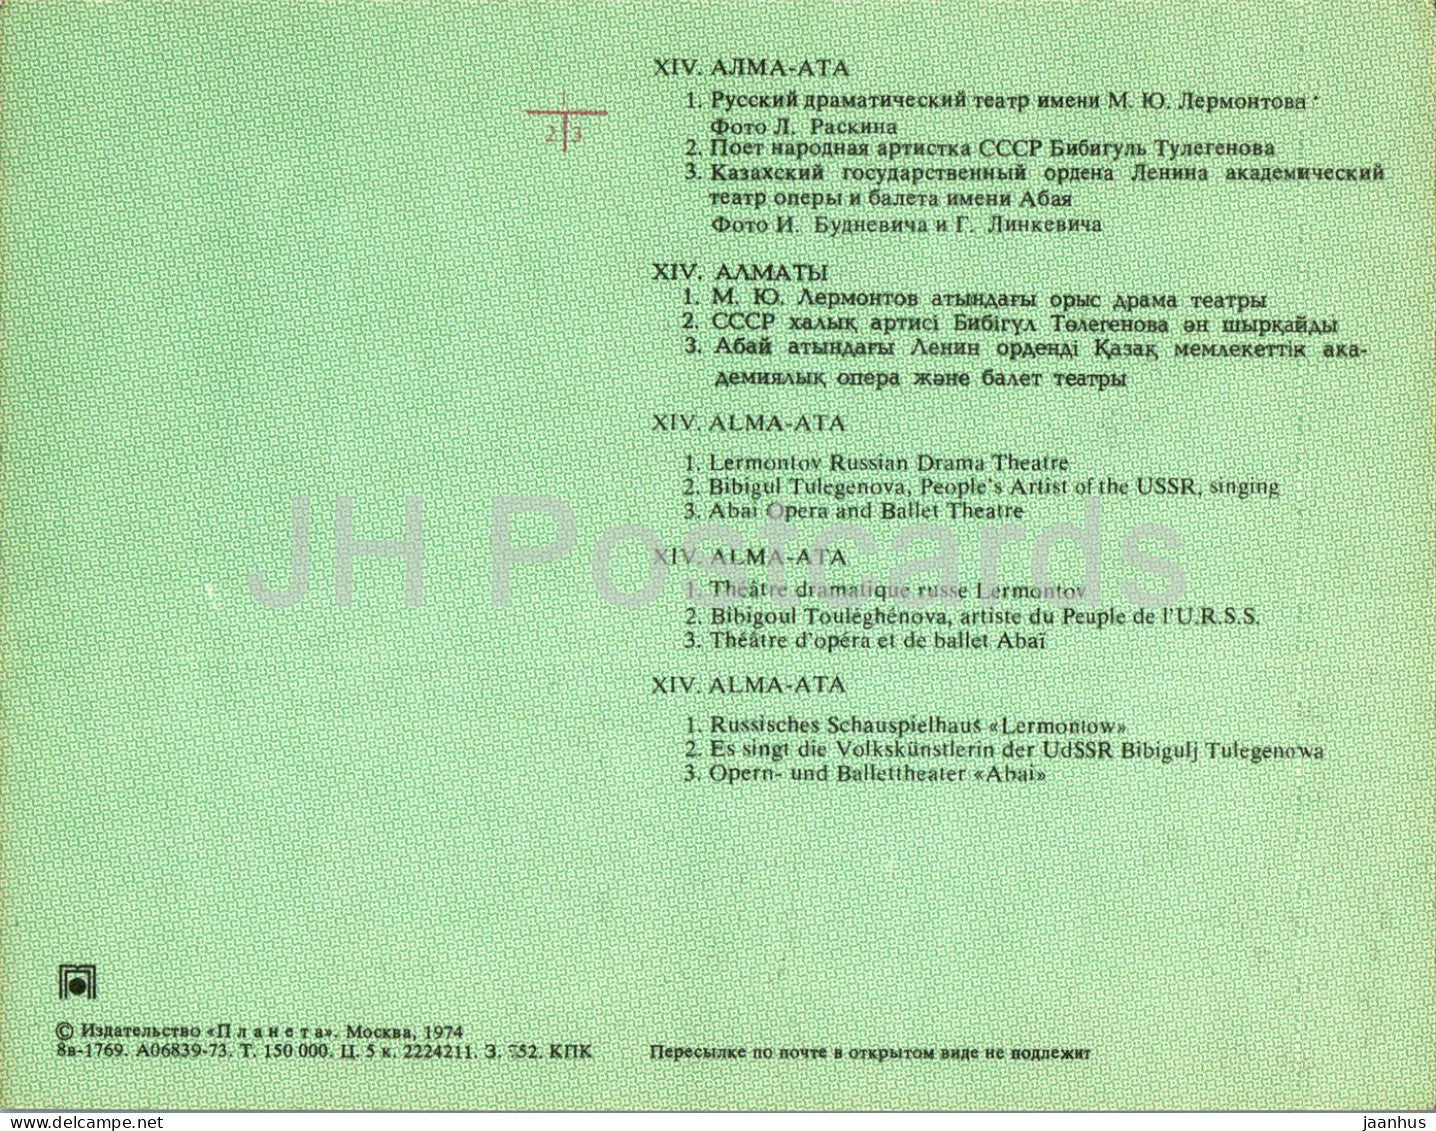 Almaty - Alma-Ata - Lermontov Russisches Dramatheater - Abai Opern- und Balletttheater - 1974 - Kasachstan UdSSR - unbenutzt 